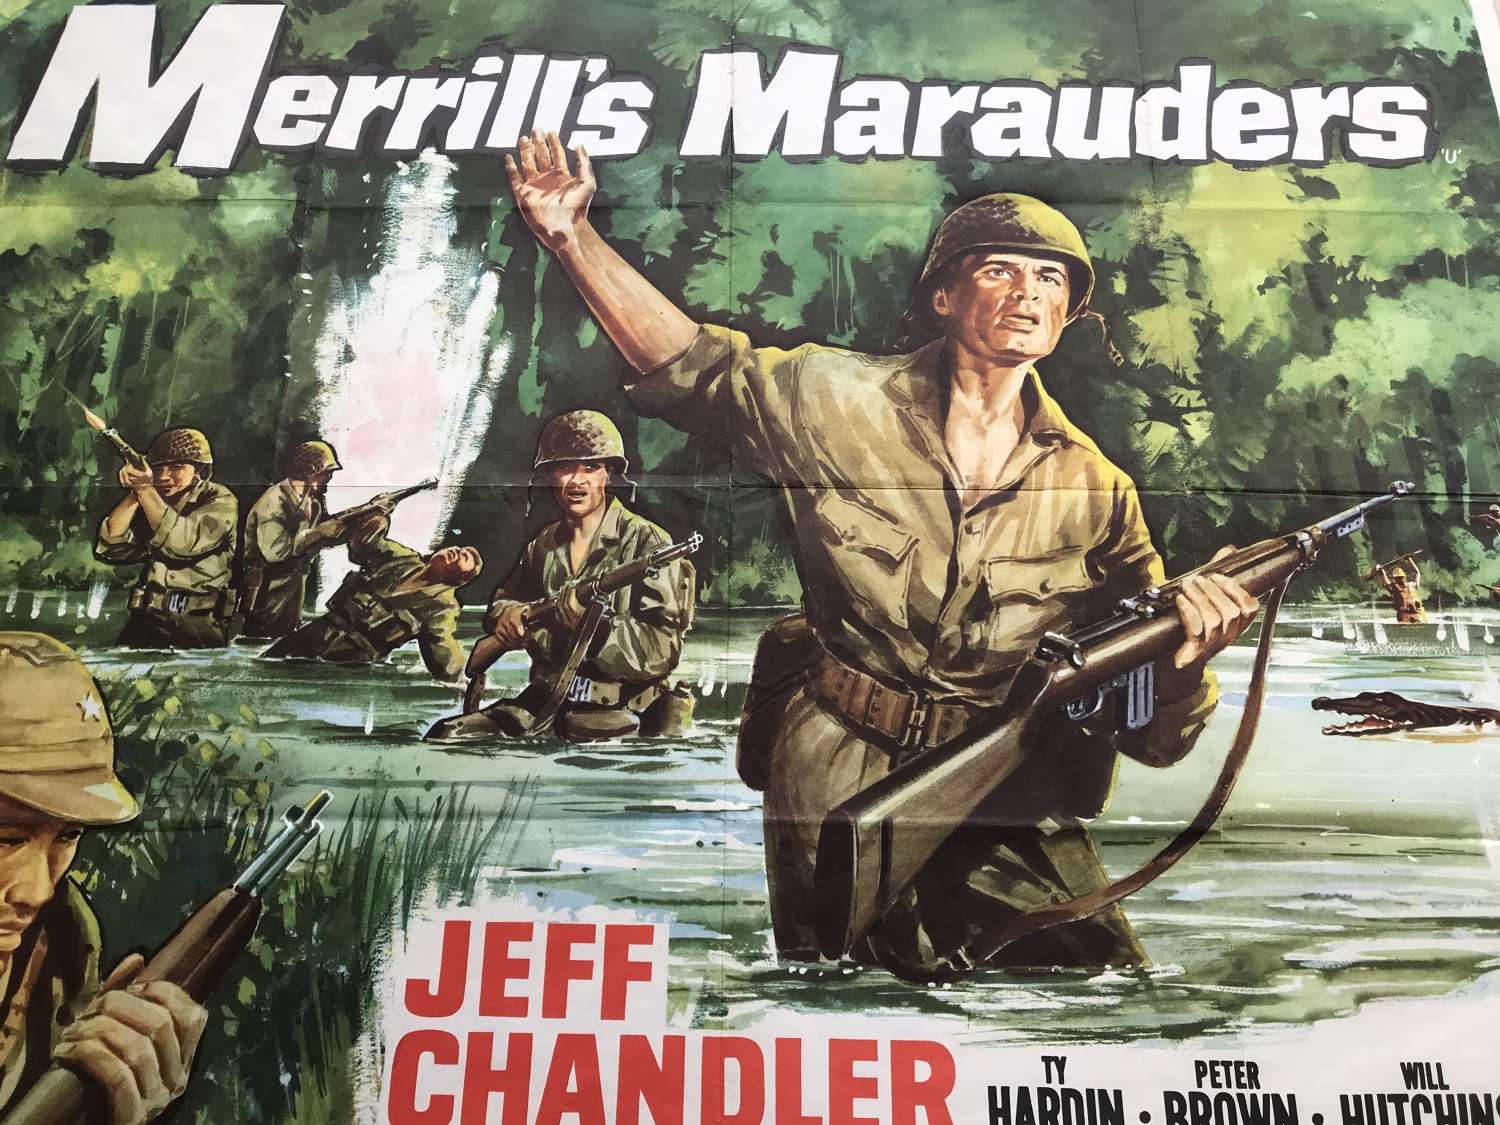 Merrills Marauders film poster